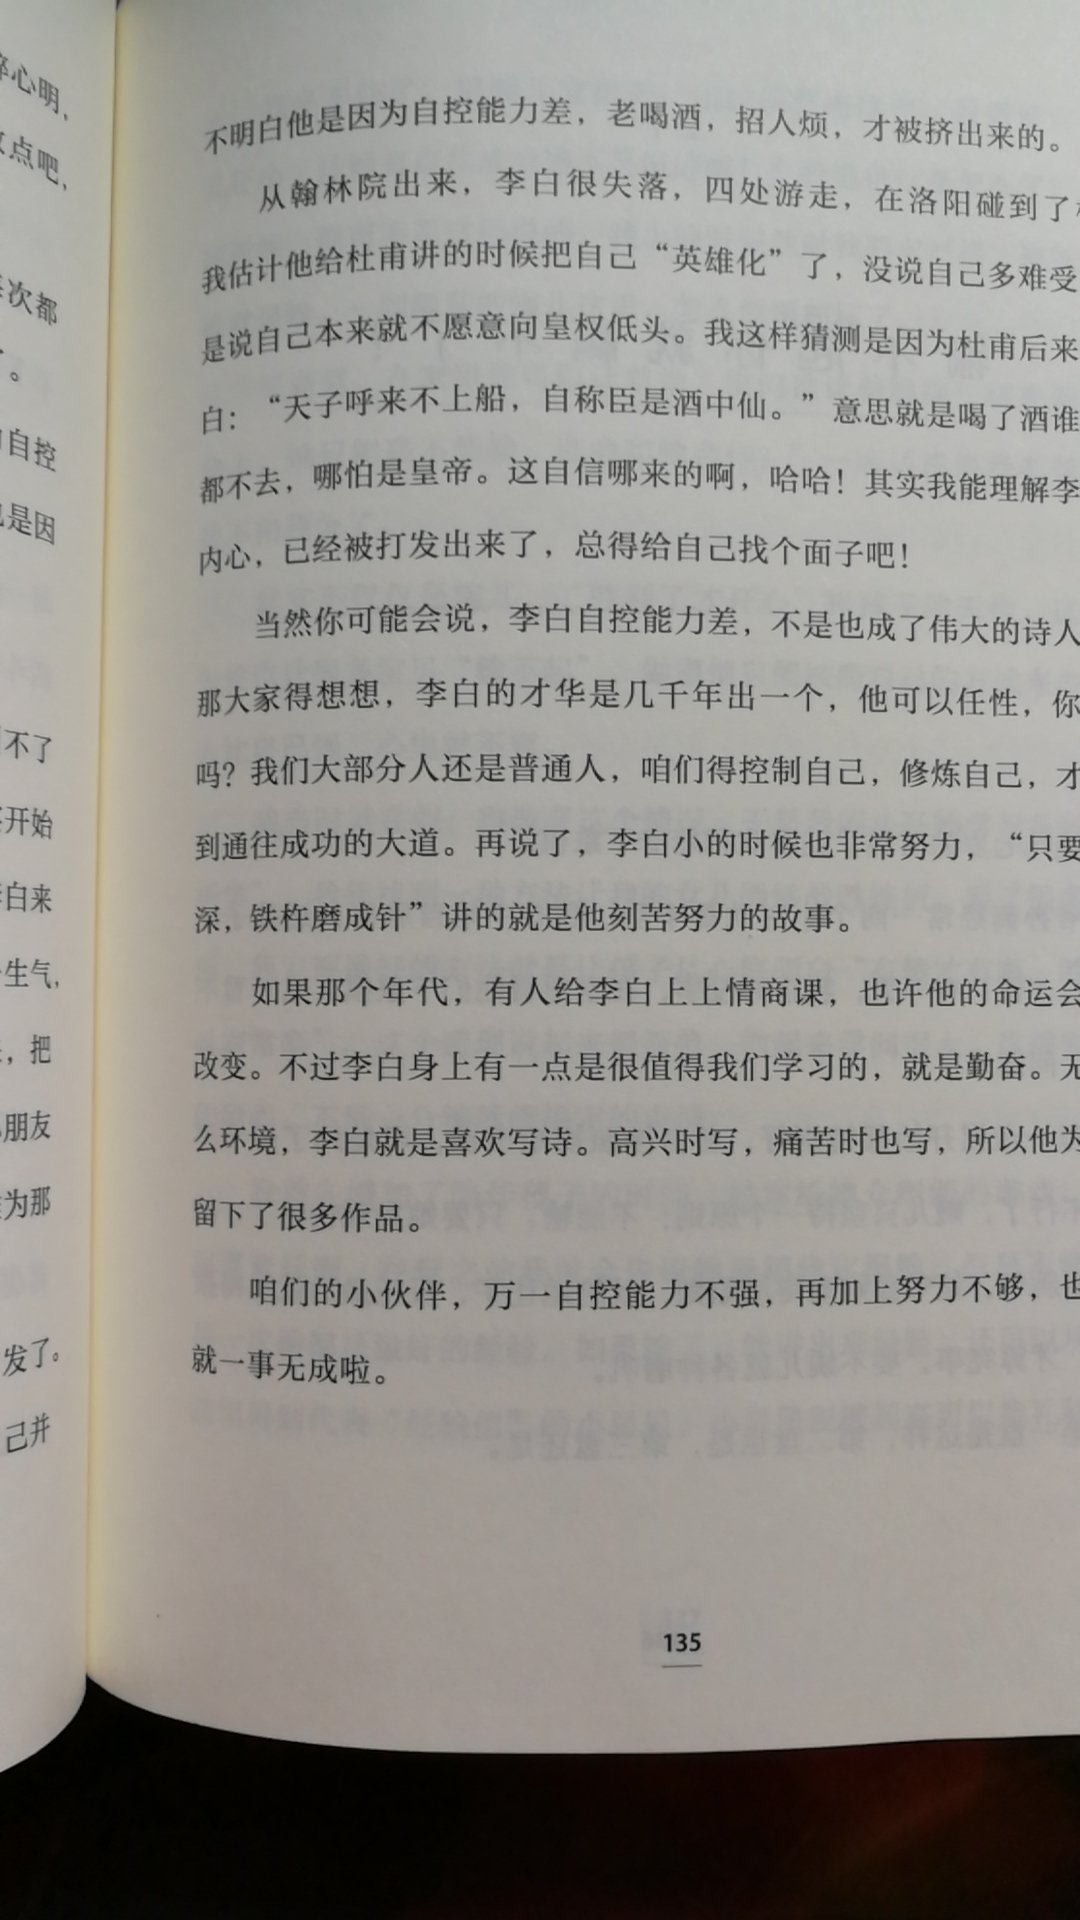 情商比智商更重要，中国孩子的情商进阶之书。